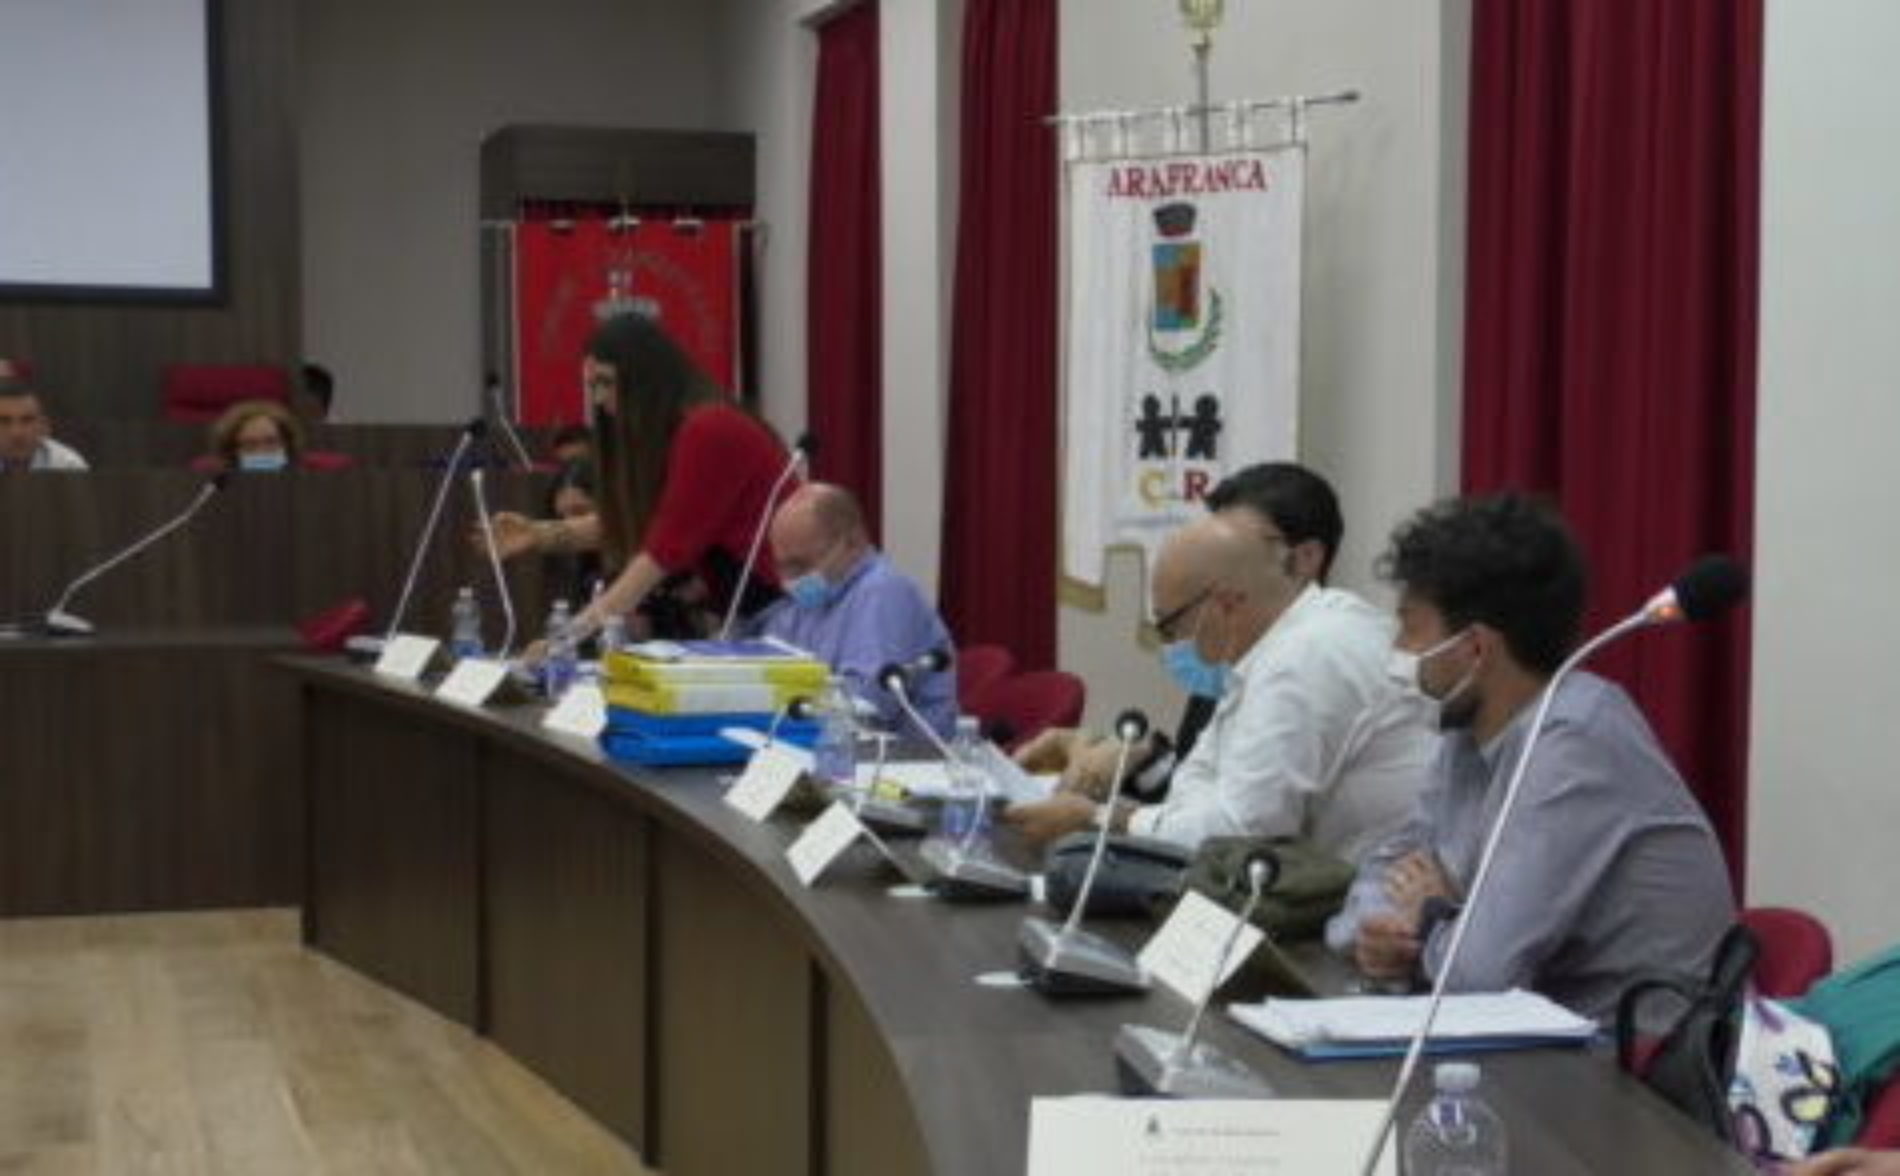 Barrafranca. Le opposizioni “Chiediamo le dimissioni del Sindaco Accardi e di tutto l’intero Consiglio comunale”